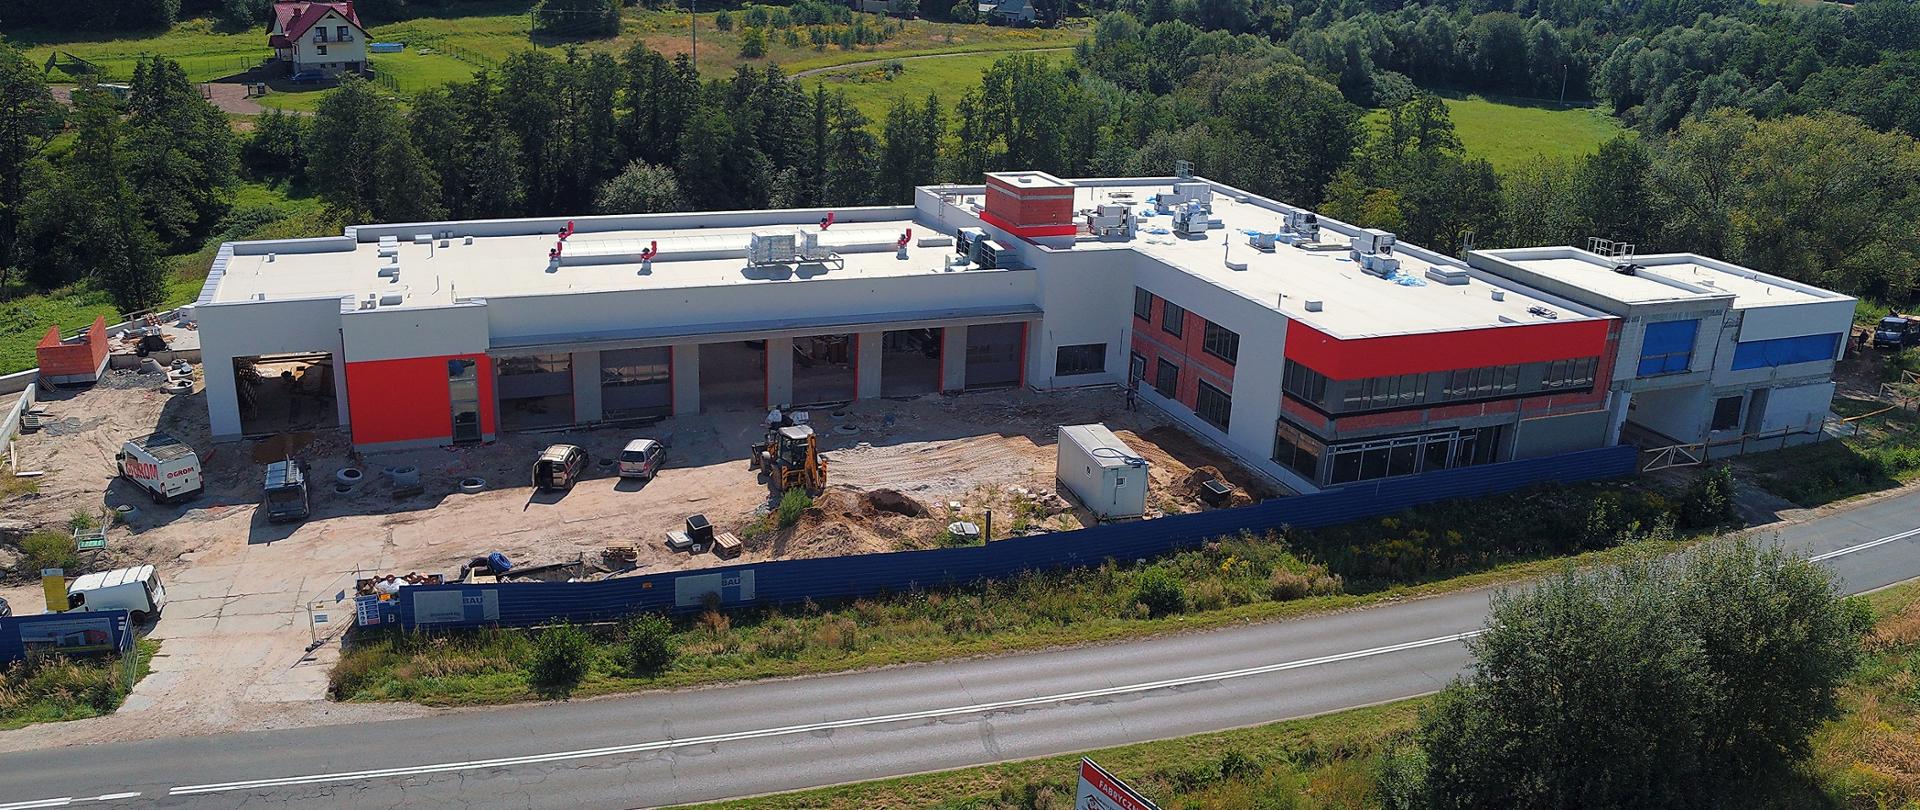 Zdjęcie przedstawia budynek nowo budowanej strażnicy KP PSP w Wieliczce